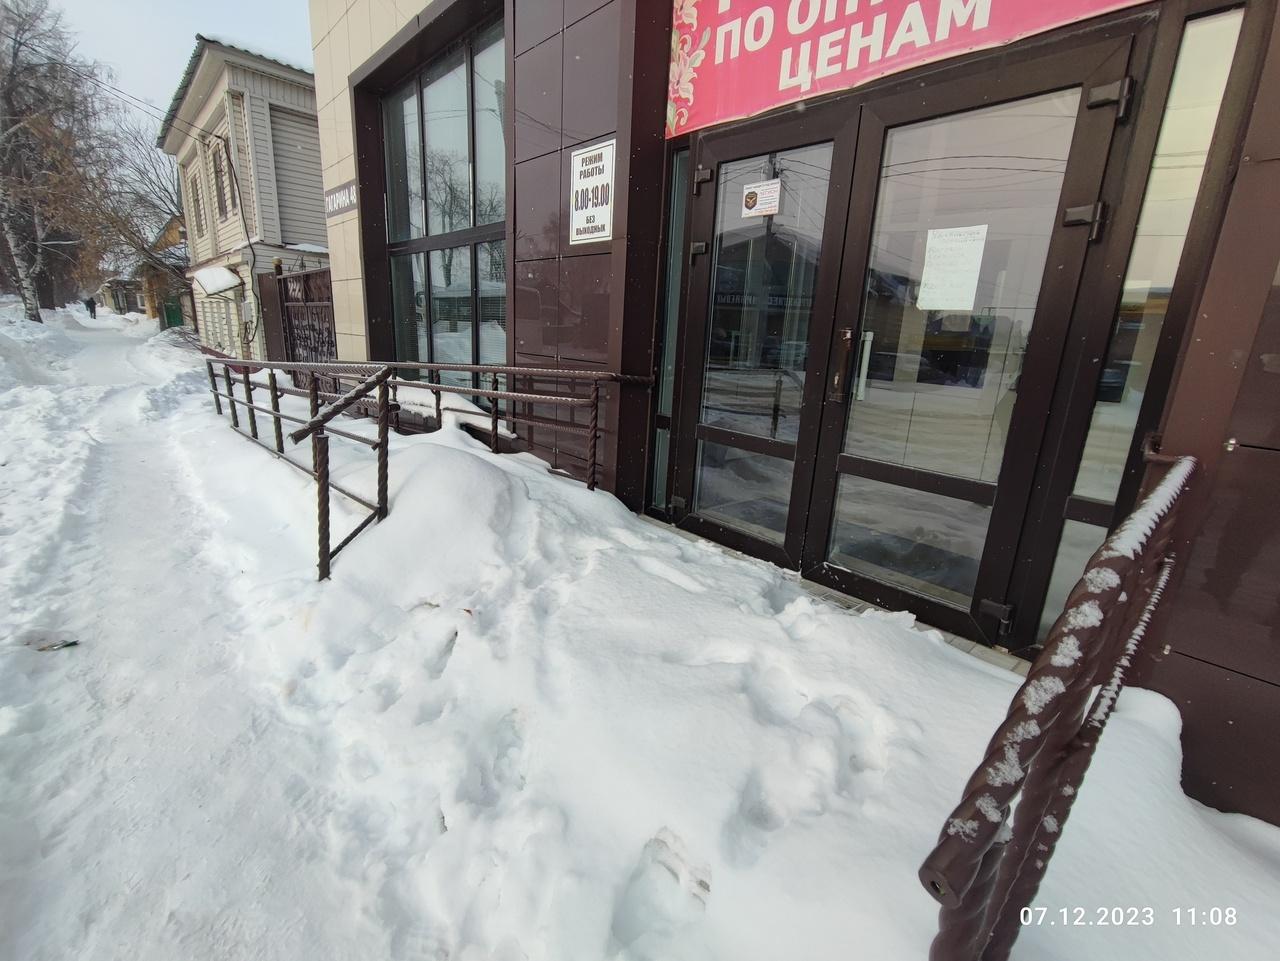 Все владельцы торговых и развлекательных объектов обязаны очищать прилегающие территории от снега.